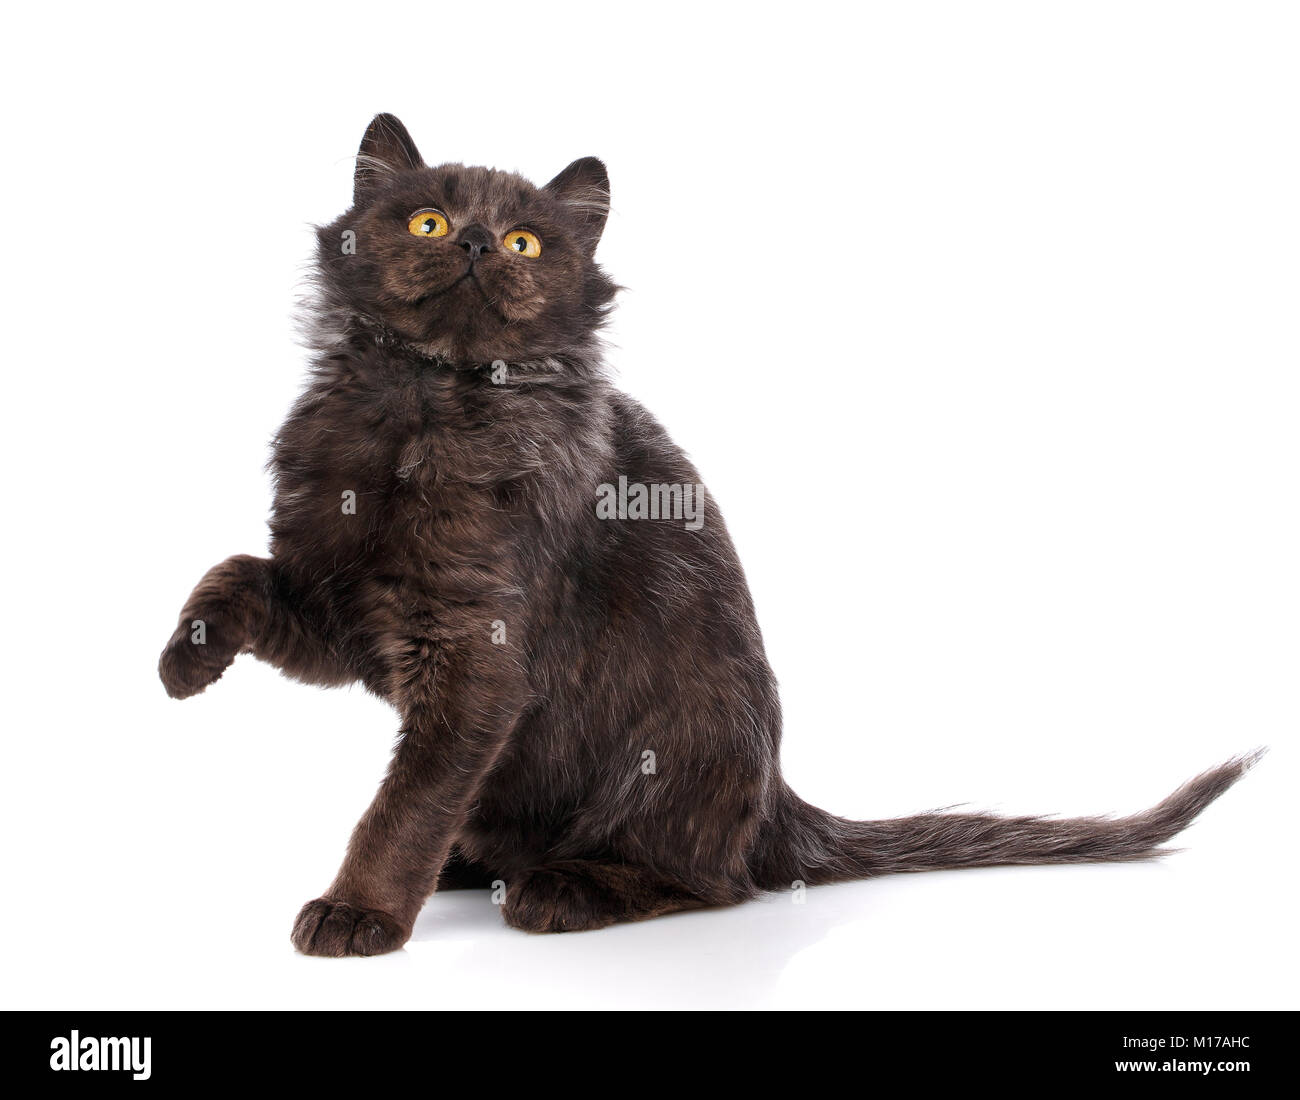 Ein verspielter schwarze Katze auf einem weißen Hintergrund. Nachfolge ist auf der Suche nach Zuflucht. Güte und Barmherzigkeit Konzept. Suchen Sie nach einem Haus für Kätzchen Stockfoto